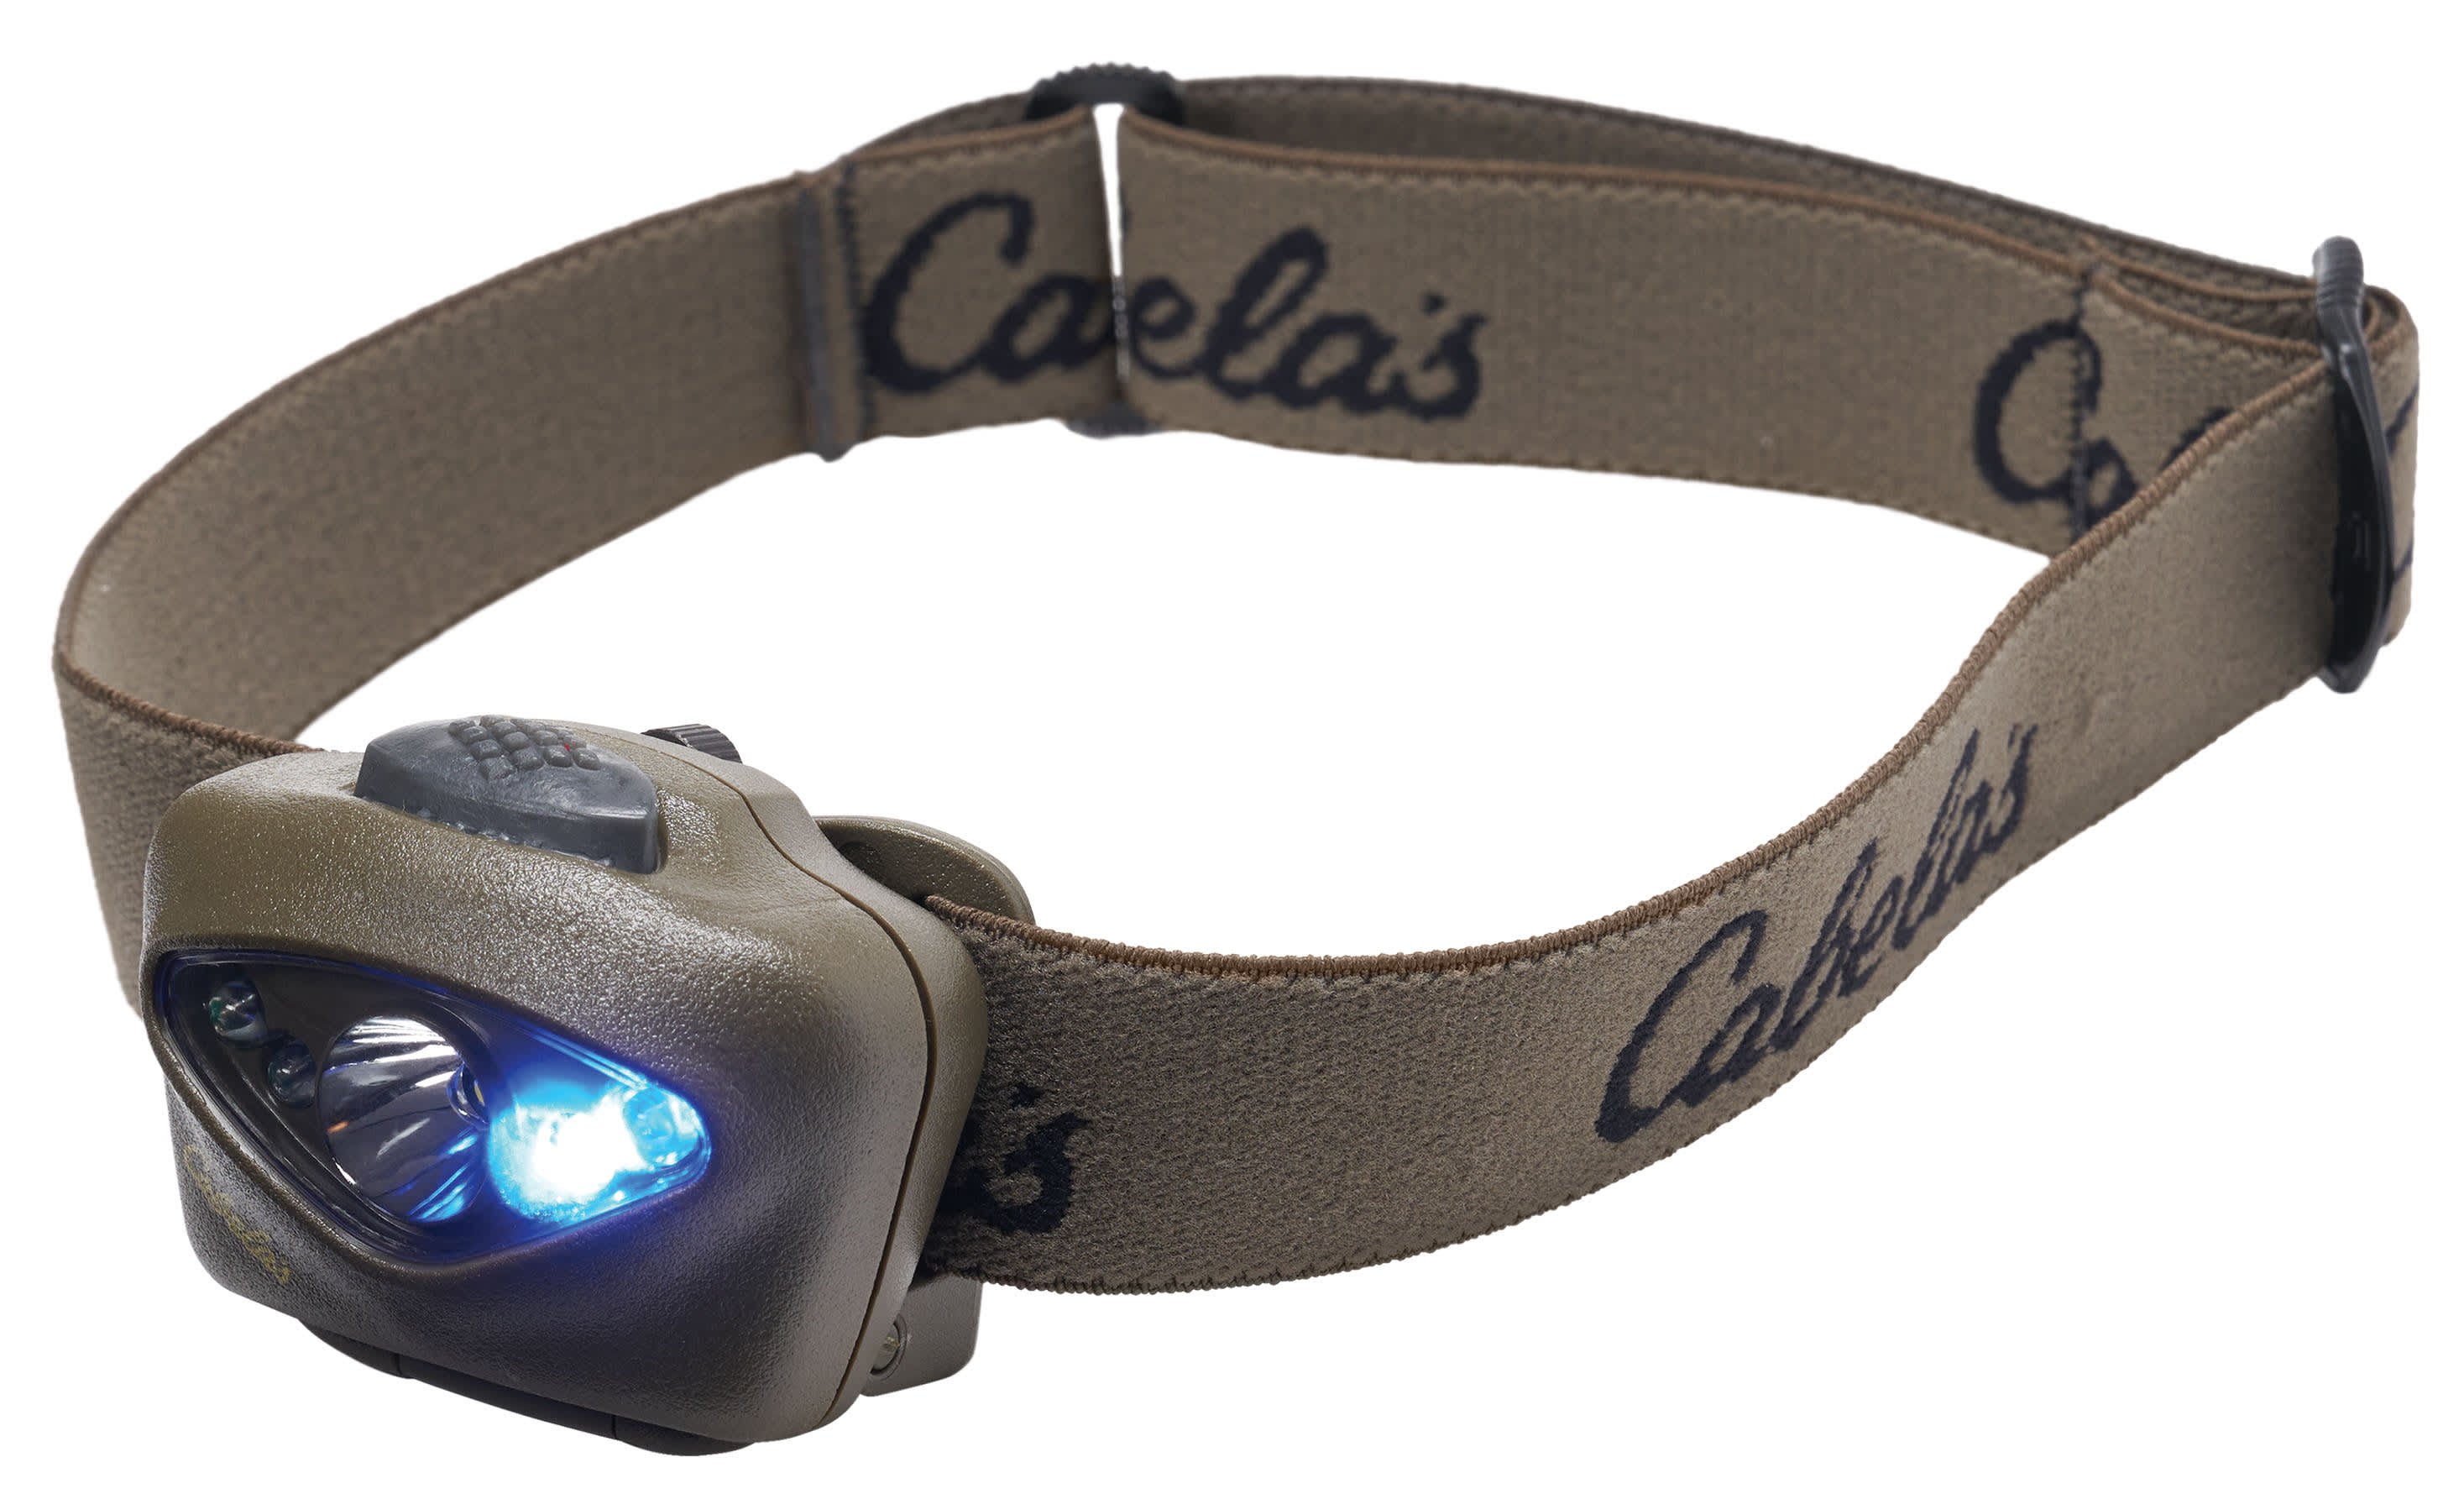 Cabela's® by Princeton Tec Vizz 550 RGB Headlamp